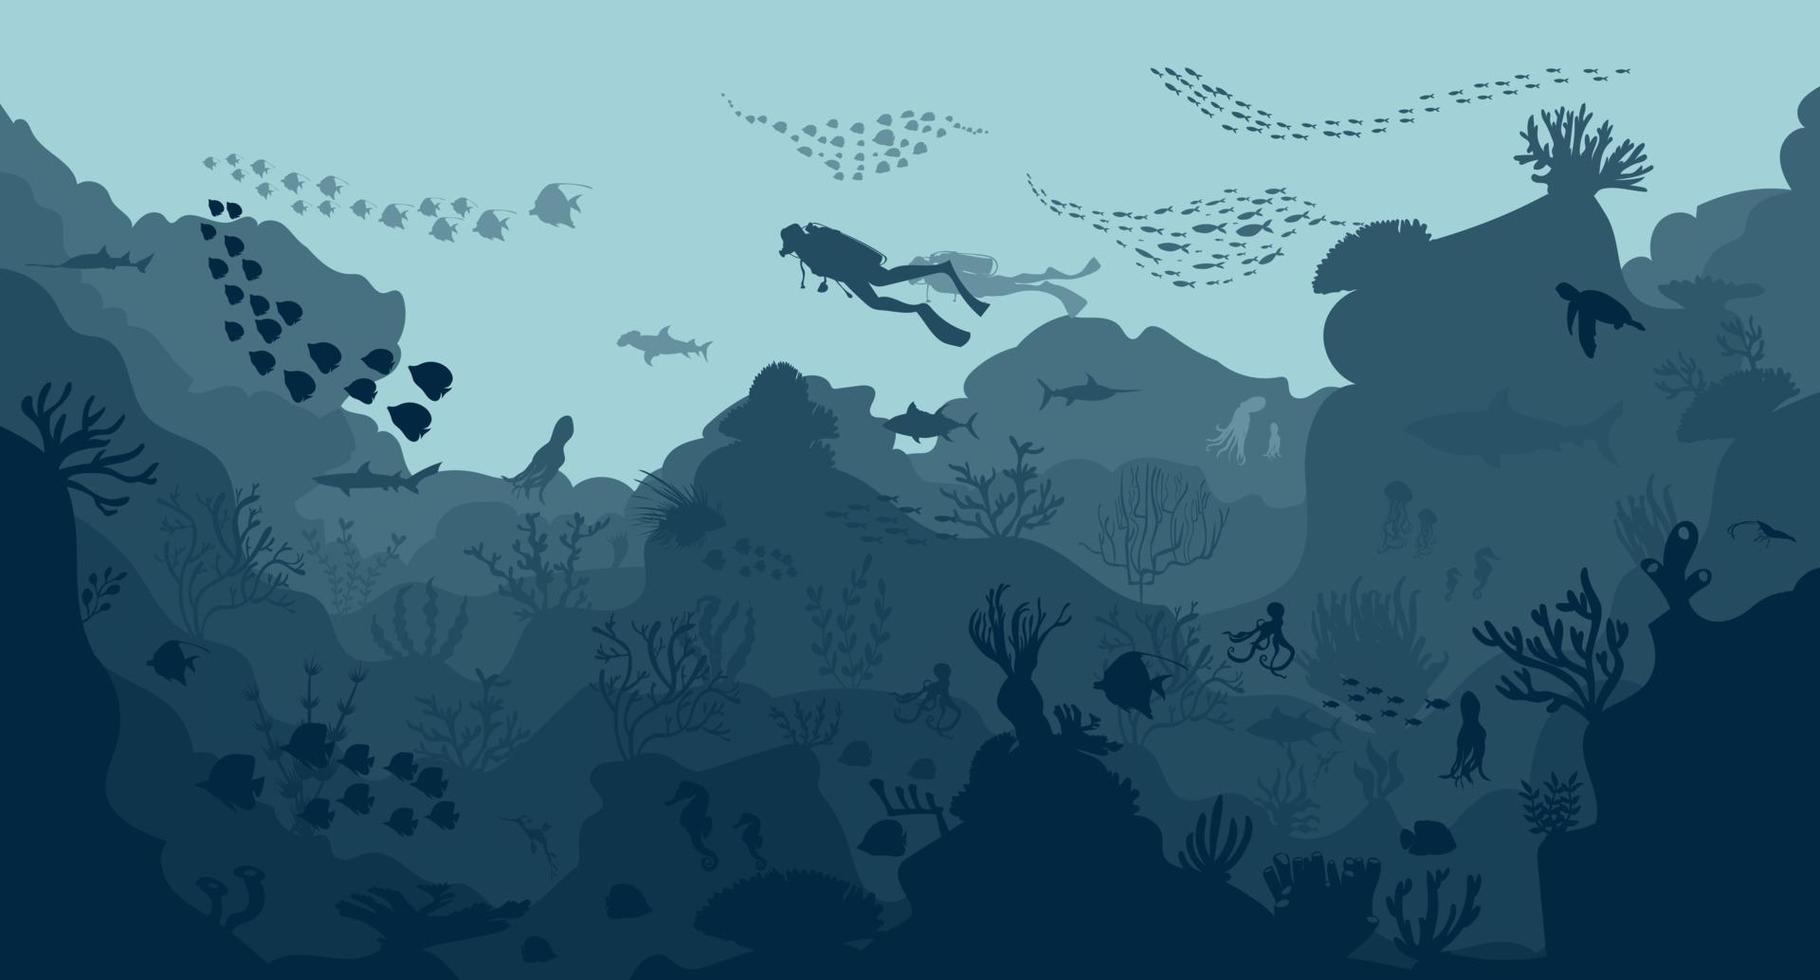 silueta de arrecife de coral con peces en el fondo azul del mar ilustración vectorial submarina vector